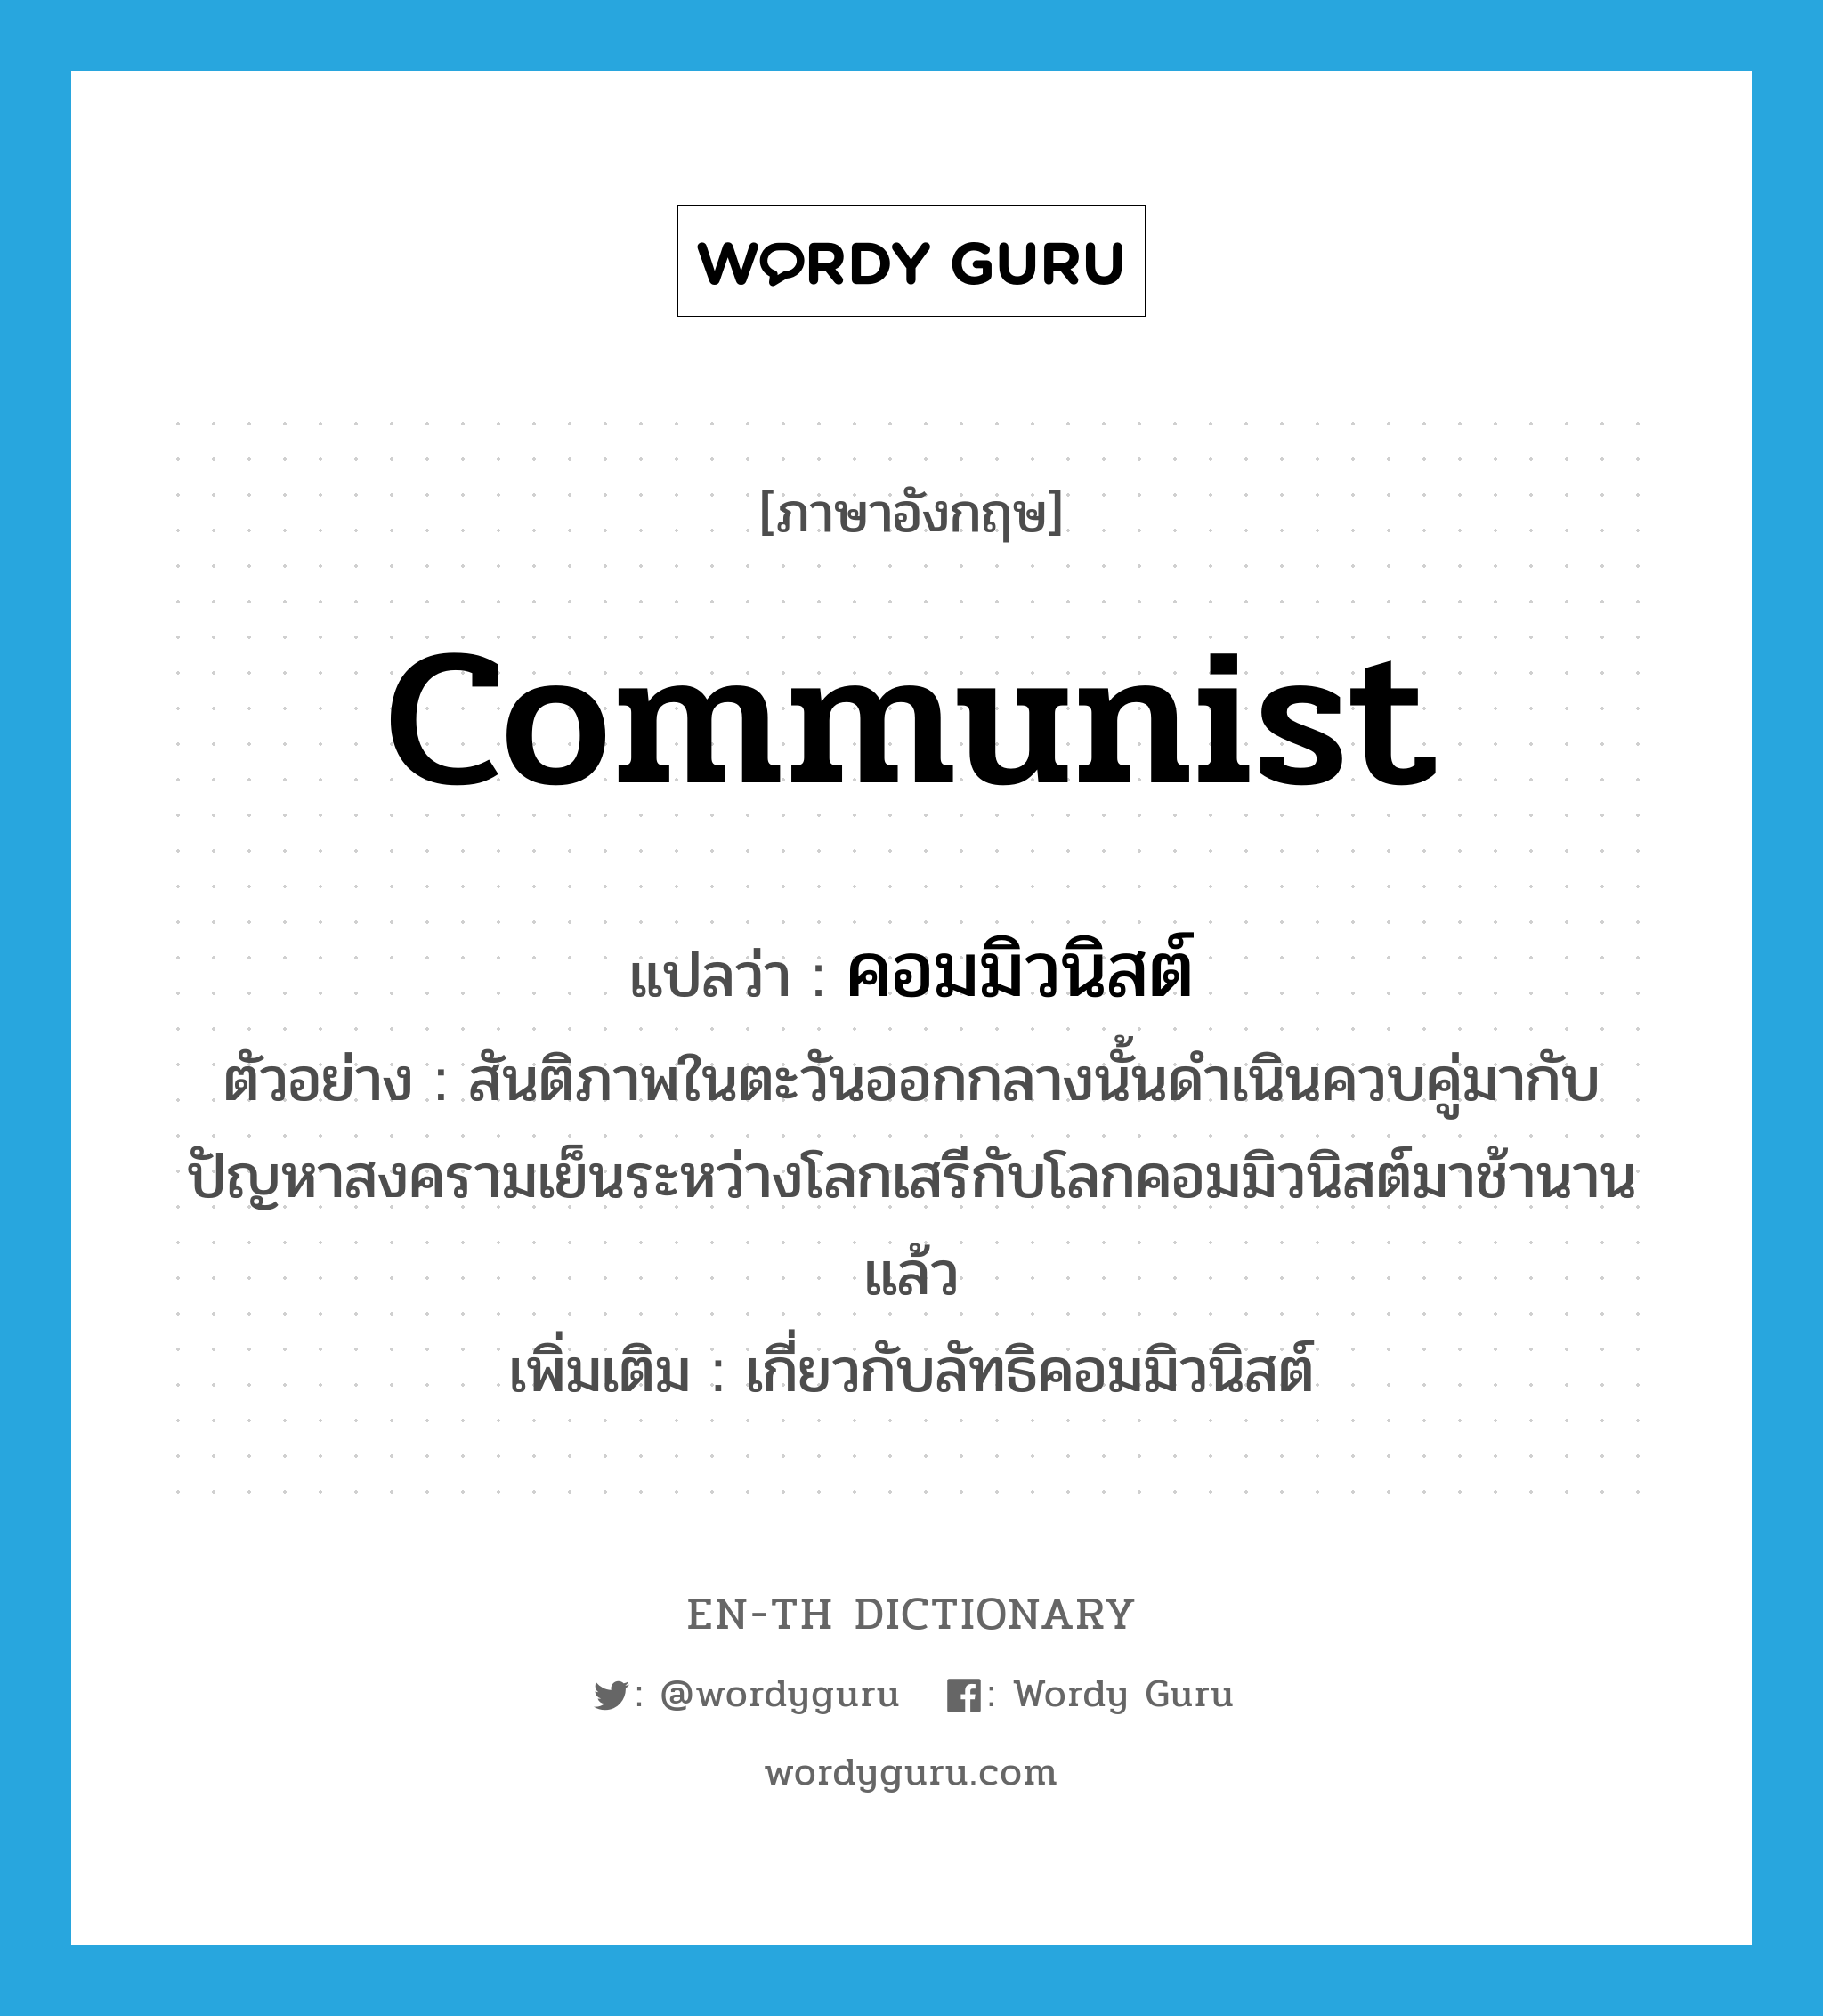 communist แปลว่า?, คำศัพท์ภาษาอังกฤษ communist แปลว่า คอมมิวนิสต์ ประเภท ADJ ตัวอย่าง สันติภาพในตะวันออกกลางนั้นดำเนินควบคู่มากับปัญหาสงครามเย็นระหว่างโลกเสรีกับโลกคอมมิวนิสต์มาช้านานแล้ว เพิ่มเติม เกี่ยวกับลัทธิคอมมิวนิสต์ หมวด ADJ